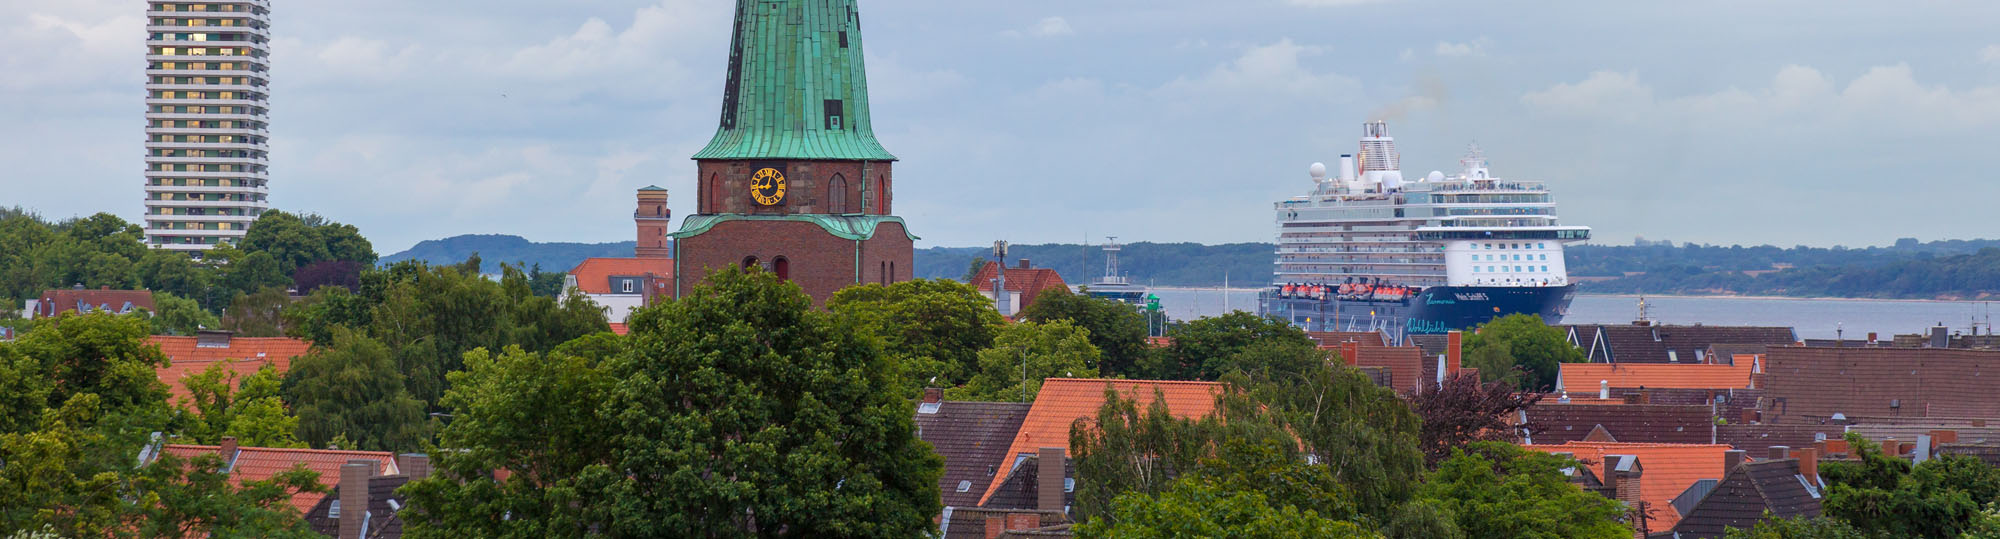 Kirchturm im Hafen Travemünde